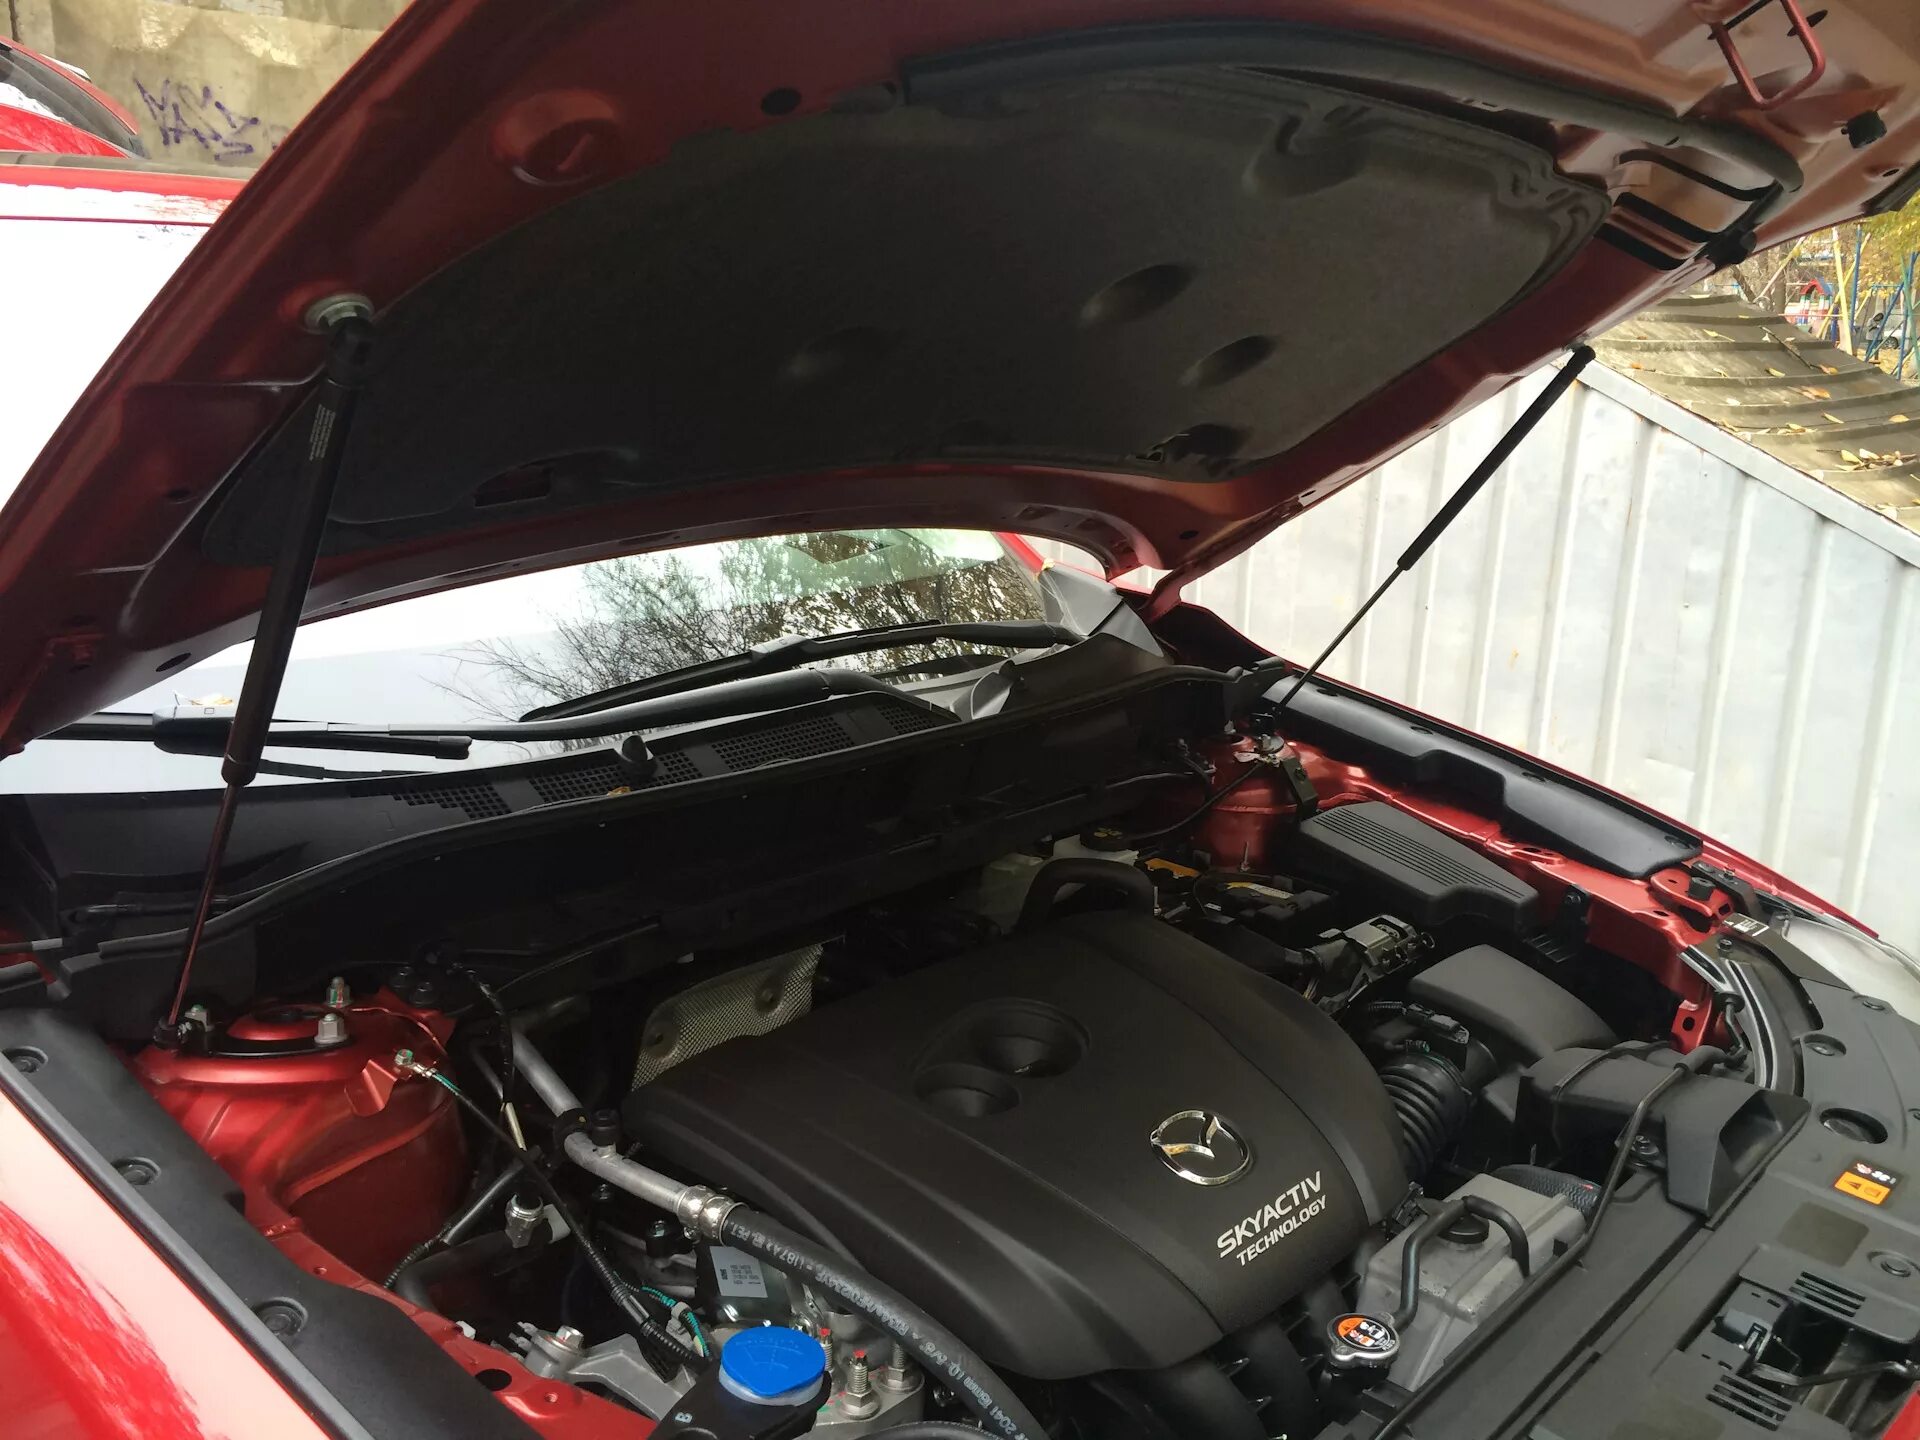 Амортизатор капота CX-5 2017 Mazda 8300771158. Mazda 8300-77-1158 упоры капота. Упоры капота на Мазда СХ 5 2017 драйв 2. Амортизаторы капота Mazda CX-5 2 поколения. Капот cx 5